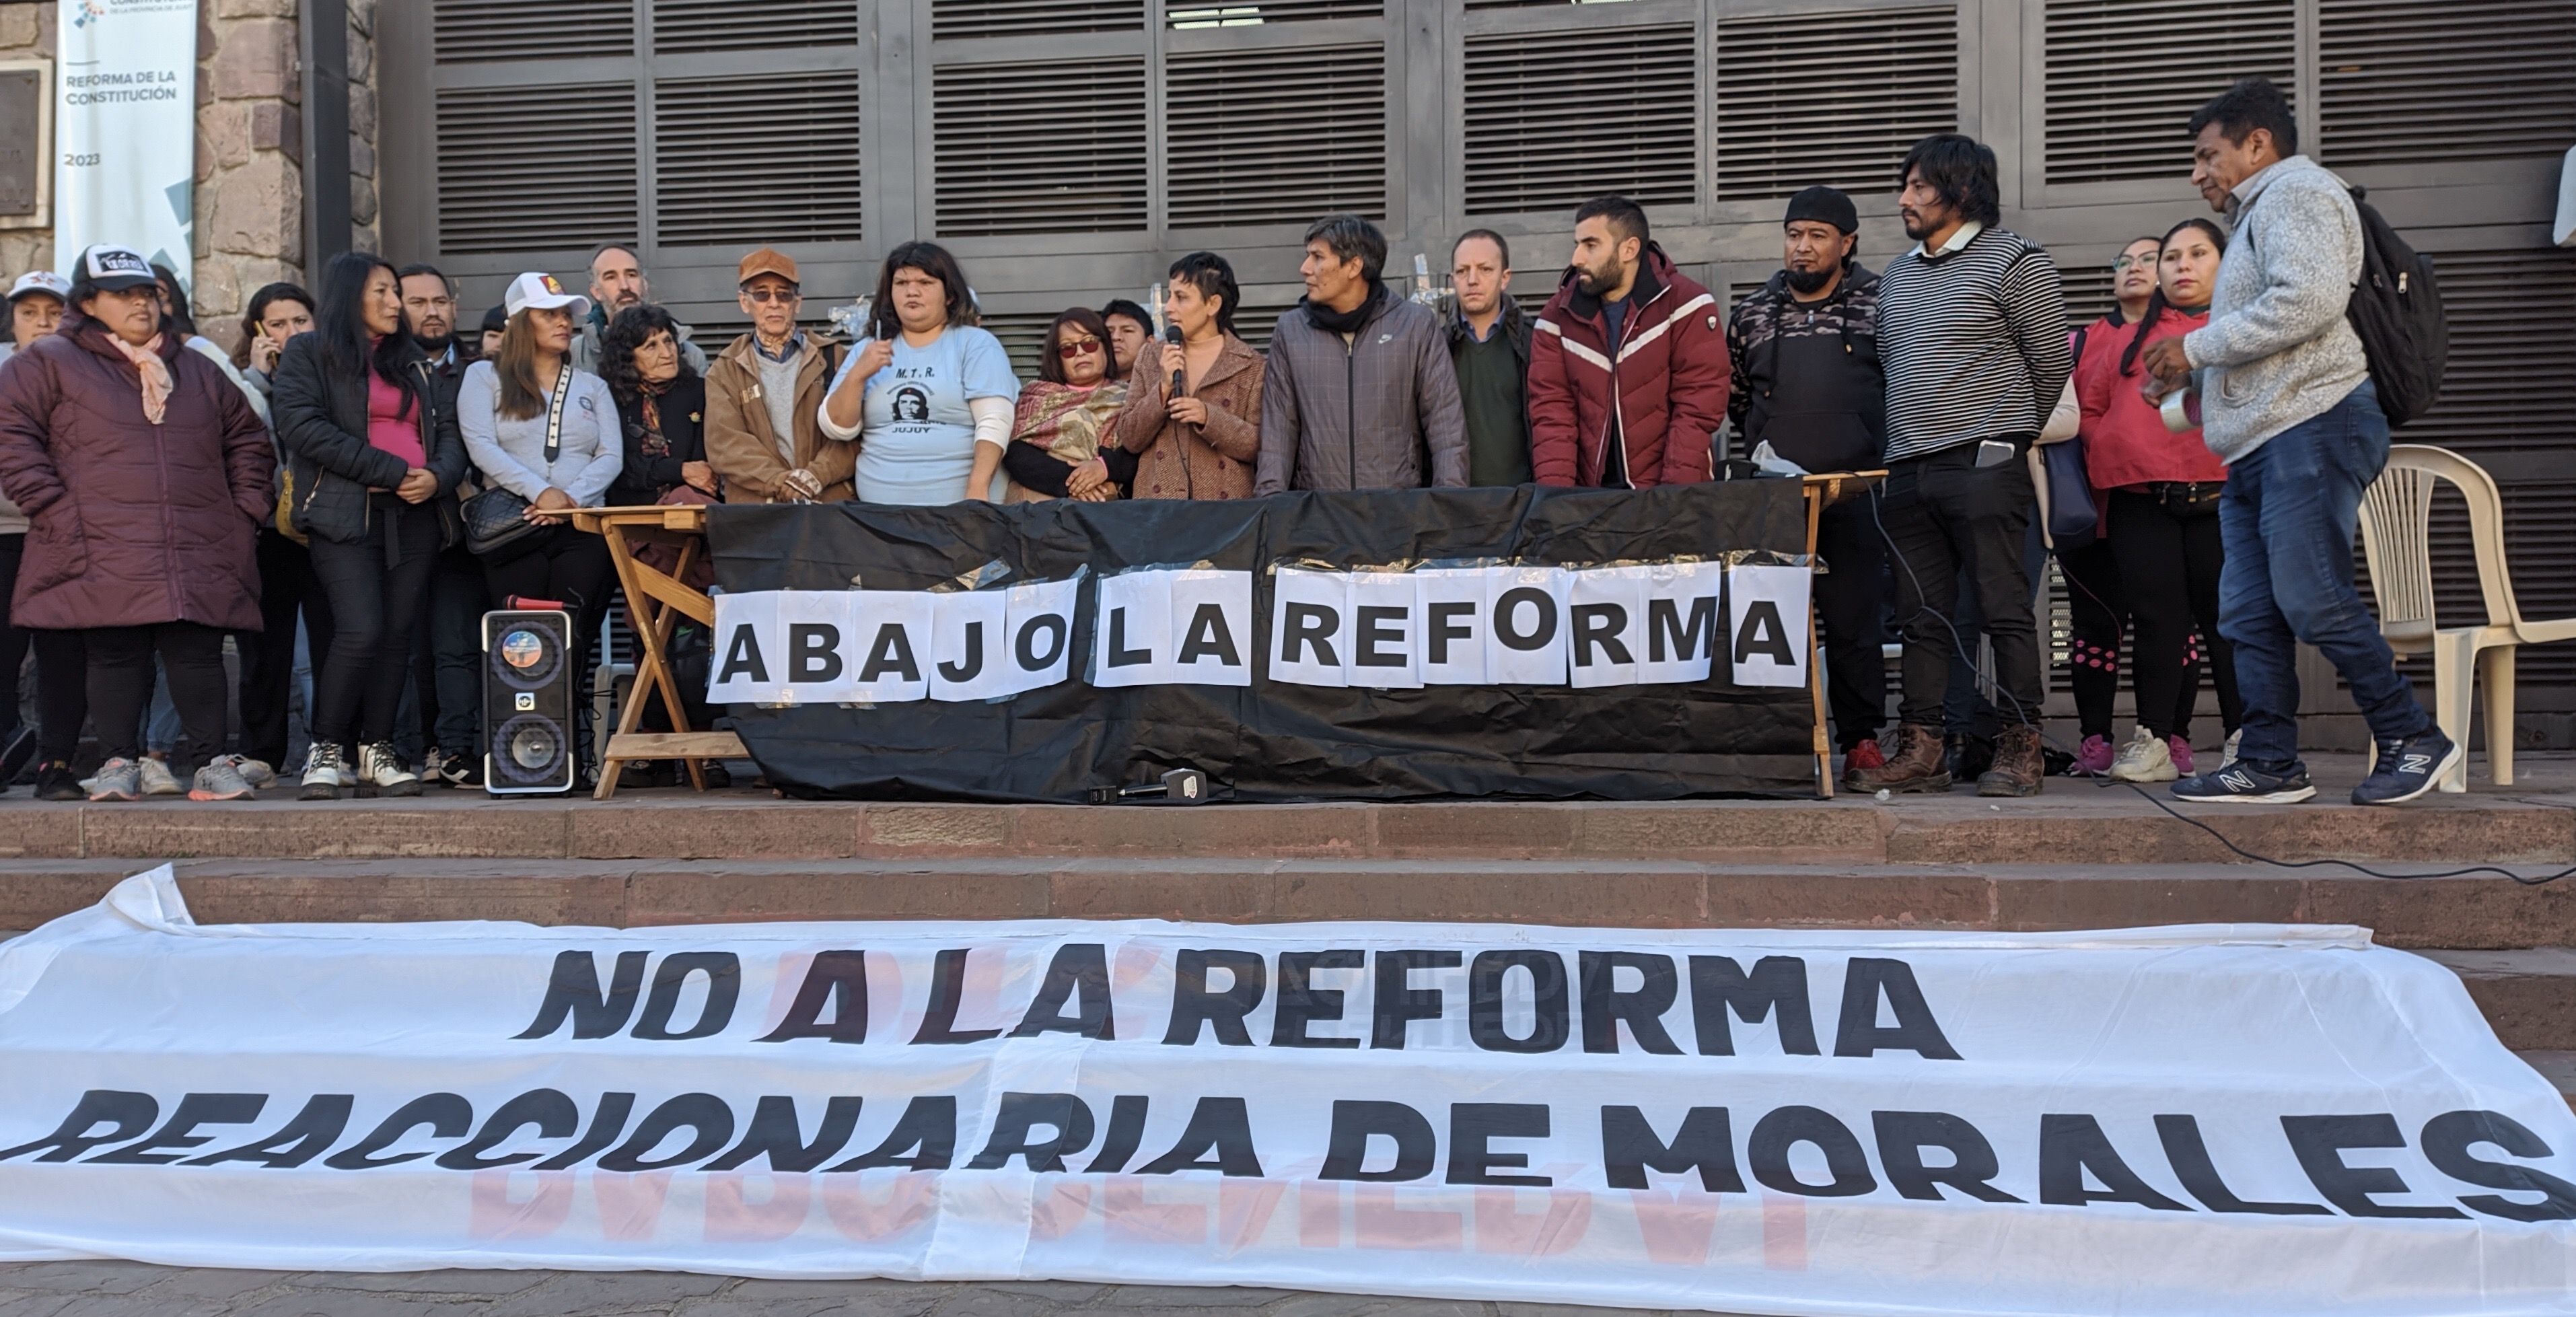 Anuncian movilizaciones en Jujuy y Buenos Aires contra la Reforma de Morales 